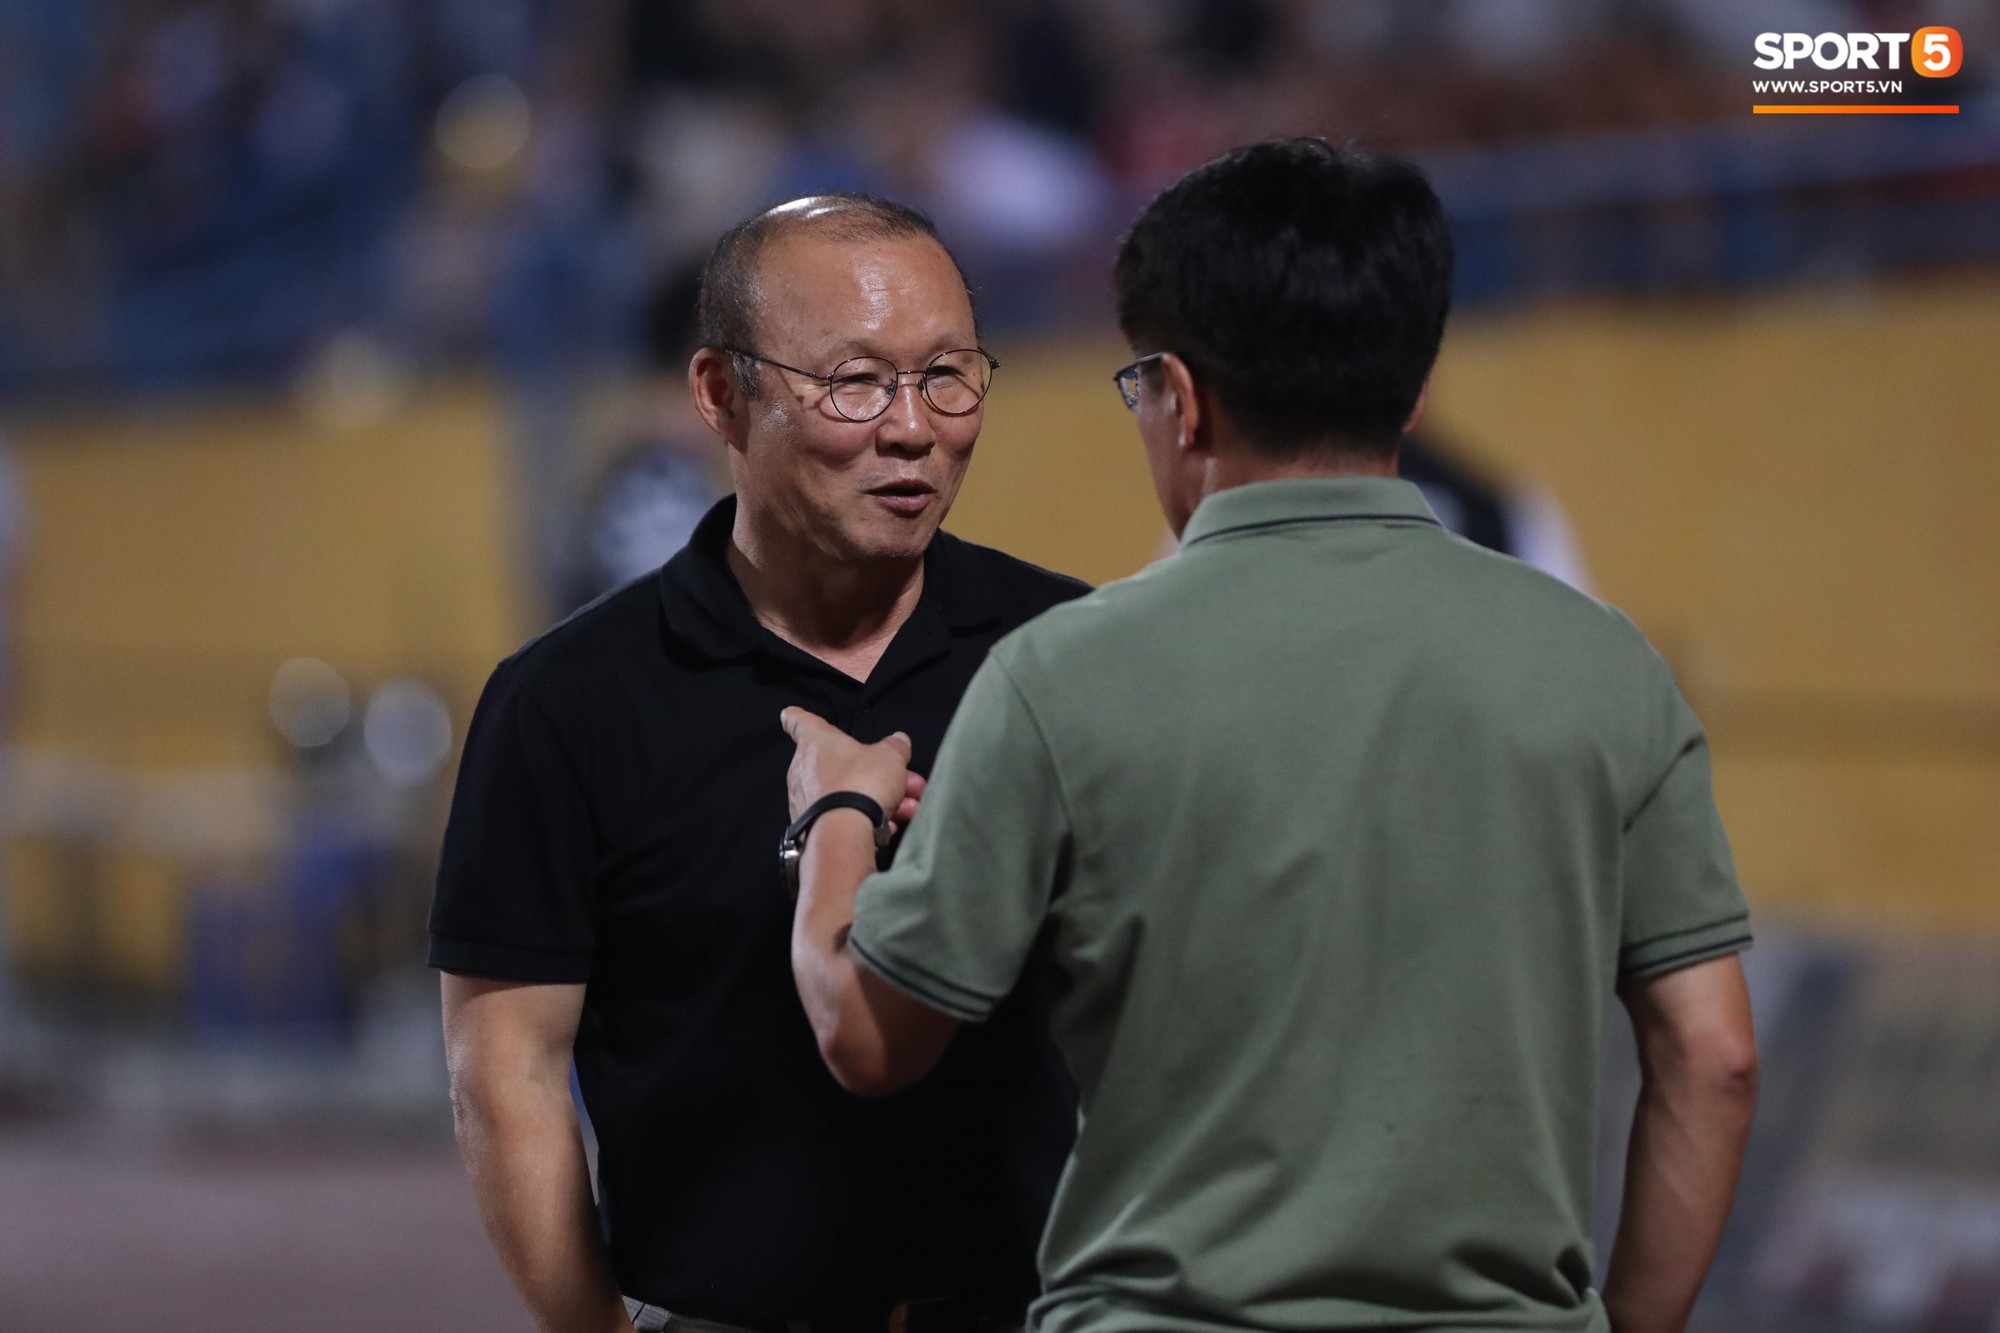 Thầy Park đầy suy tư khi chứng kiến Hải Quế, Tiến Dũng để thủng lưới tới 3 bàn trong trận đấu với Quảng Ninh - Ảnh 6.